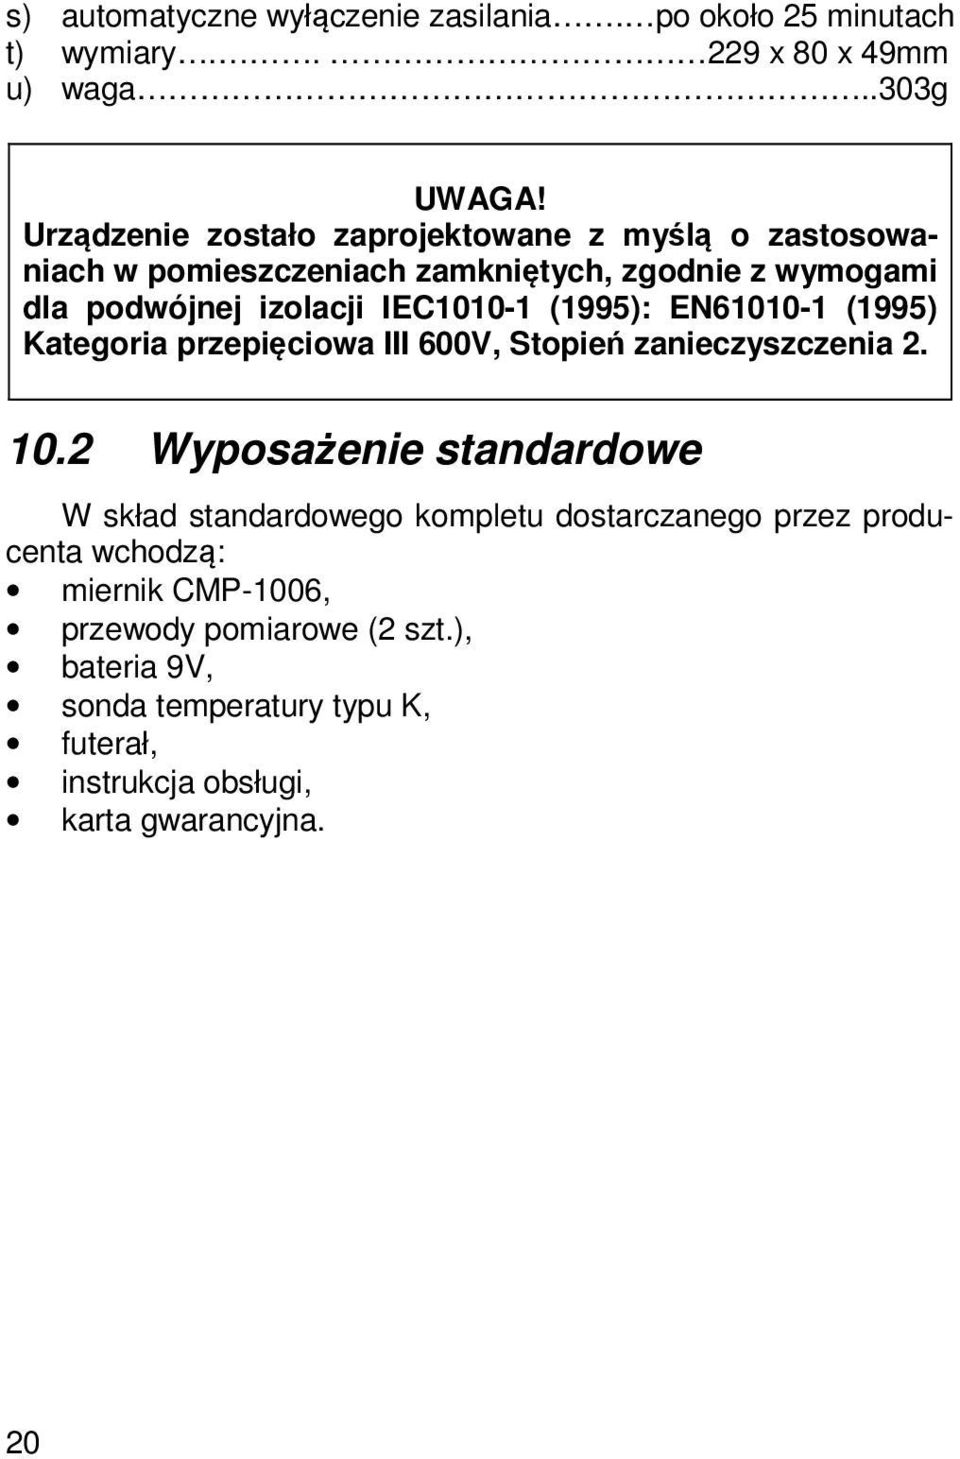 (1995): EN61010-1 (1995) Kategoria przepięciowa III 600V, Stopień zanieczyszczenia 2. 10.